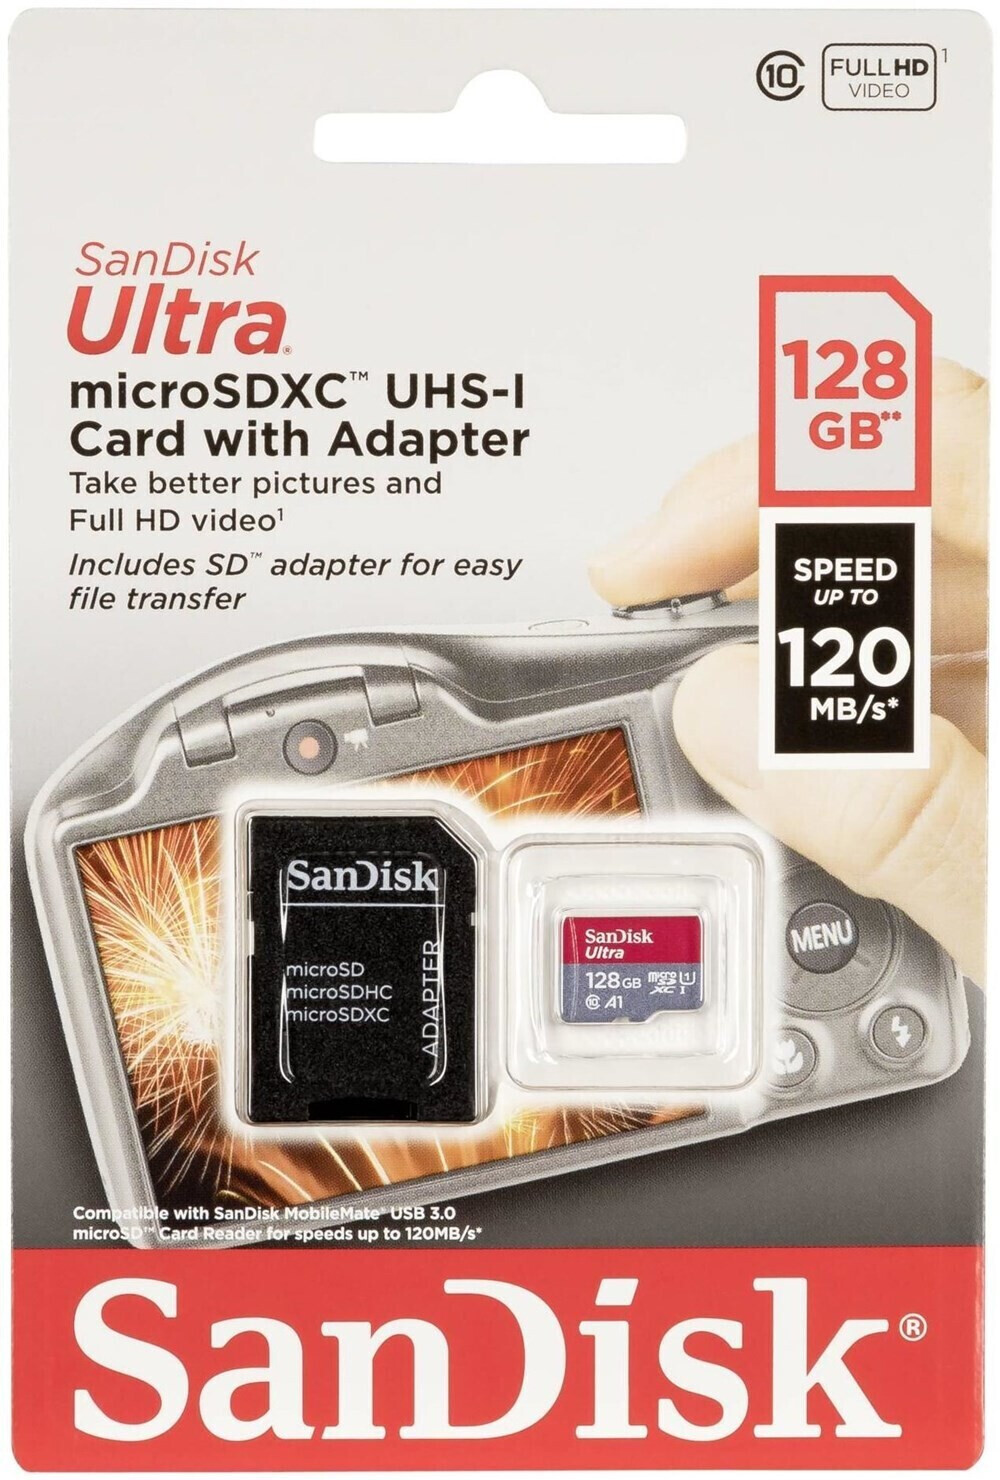 SanDisk Ultra A1 micro SDXC 64 Go (SDSQUAR-064G) au meilleur prix sur